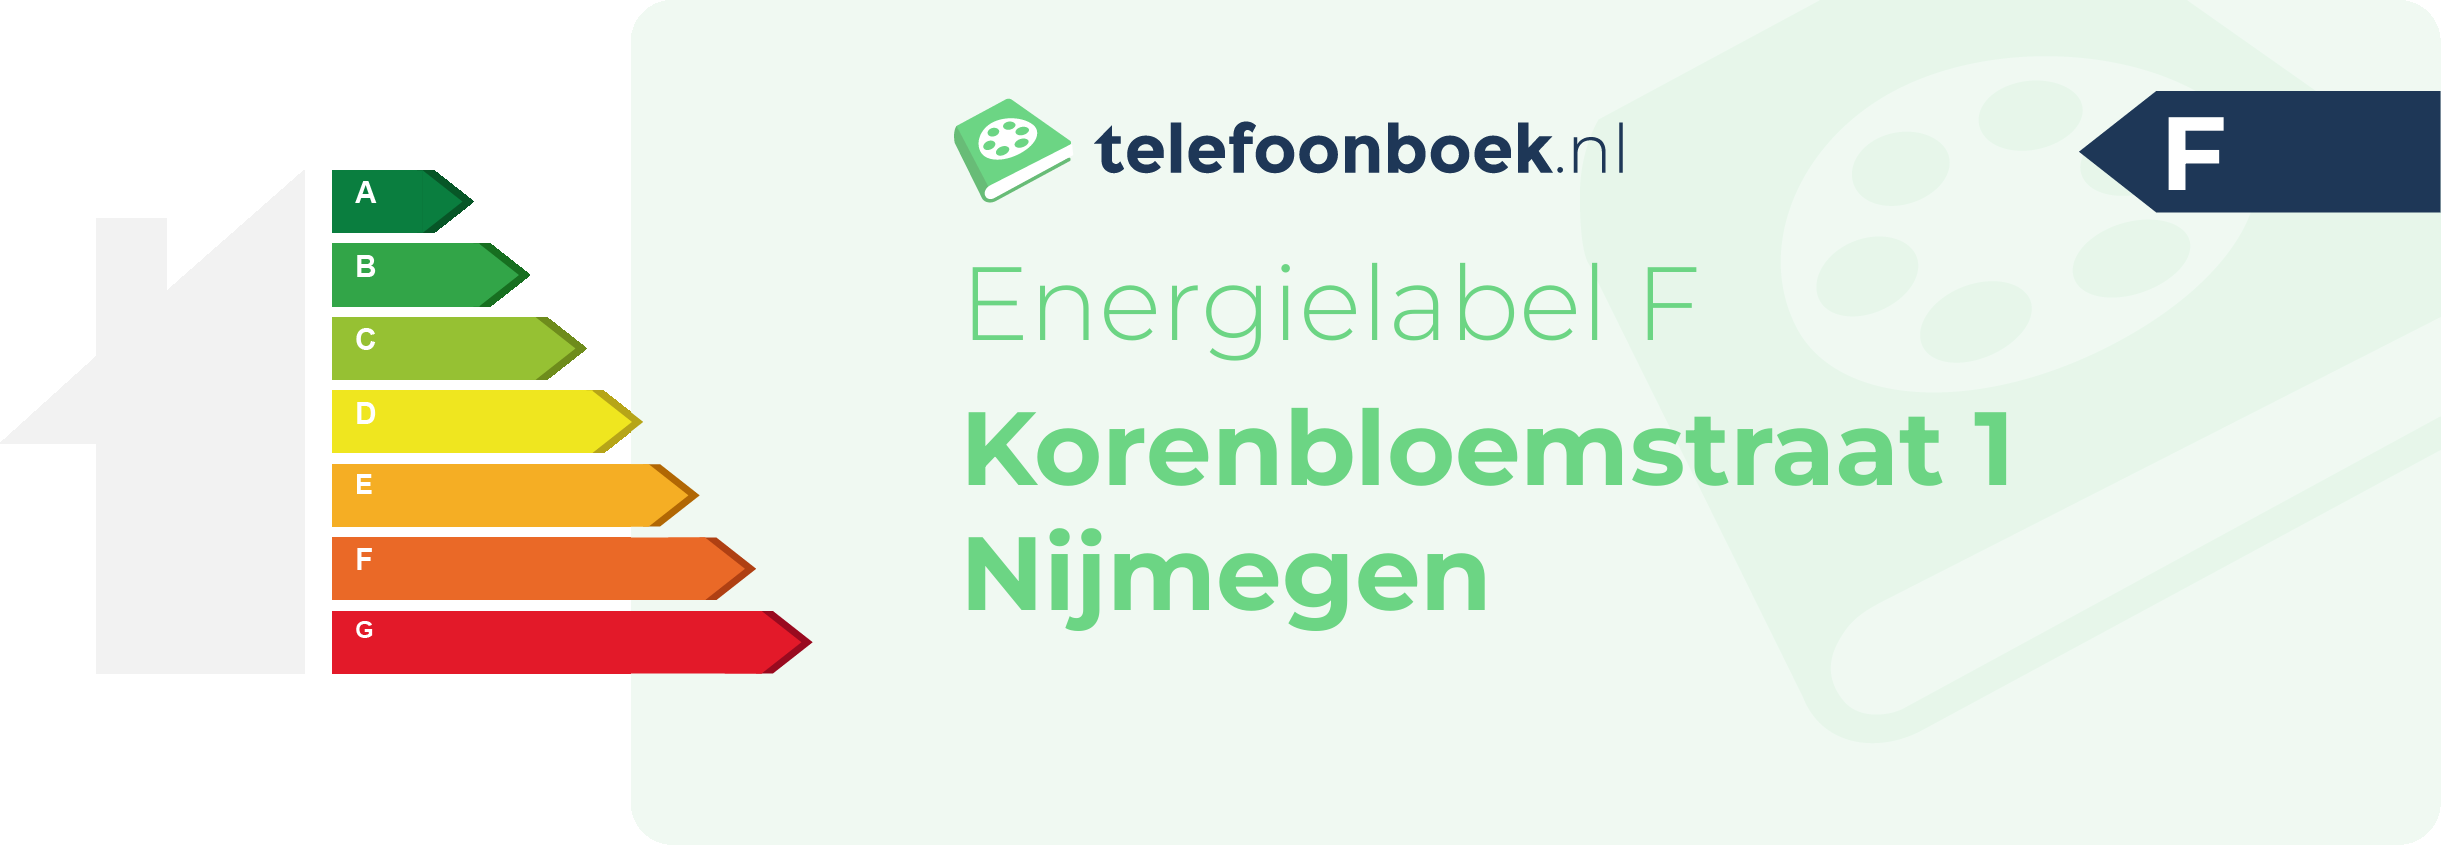 Energielabel Korenbloemstraat 1 Nijmegen